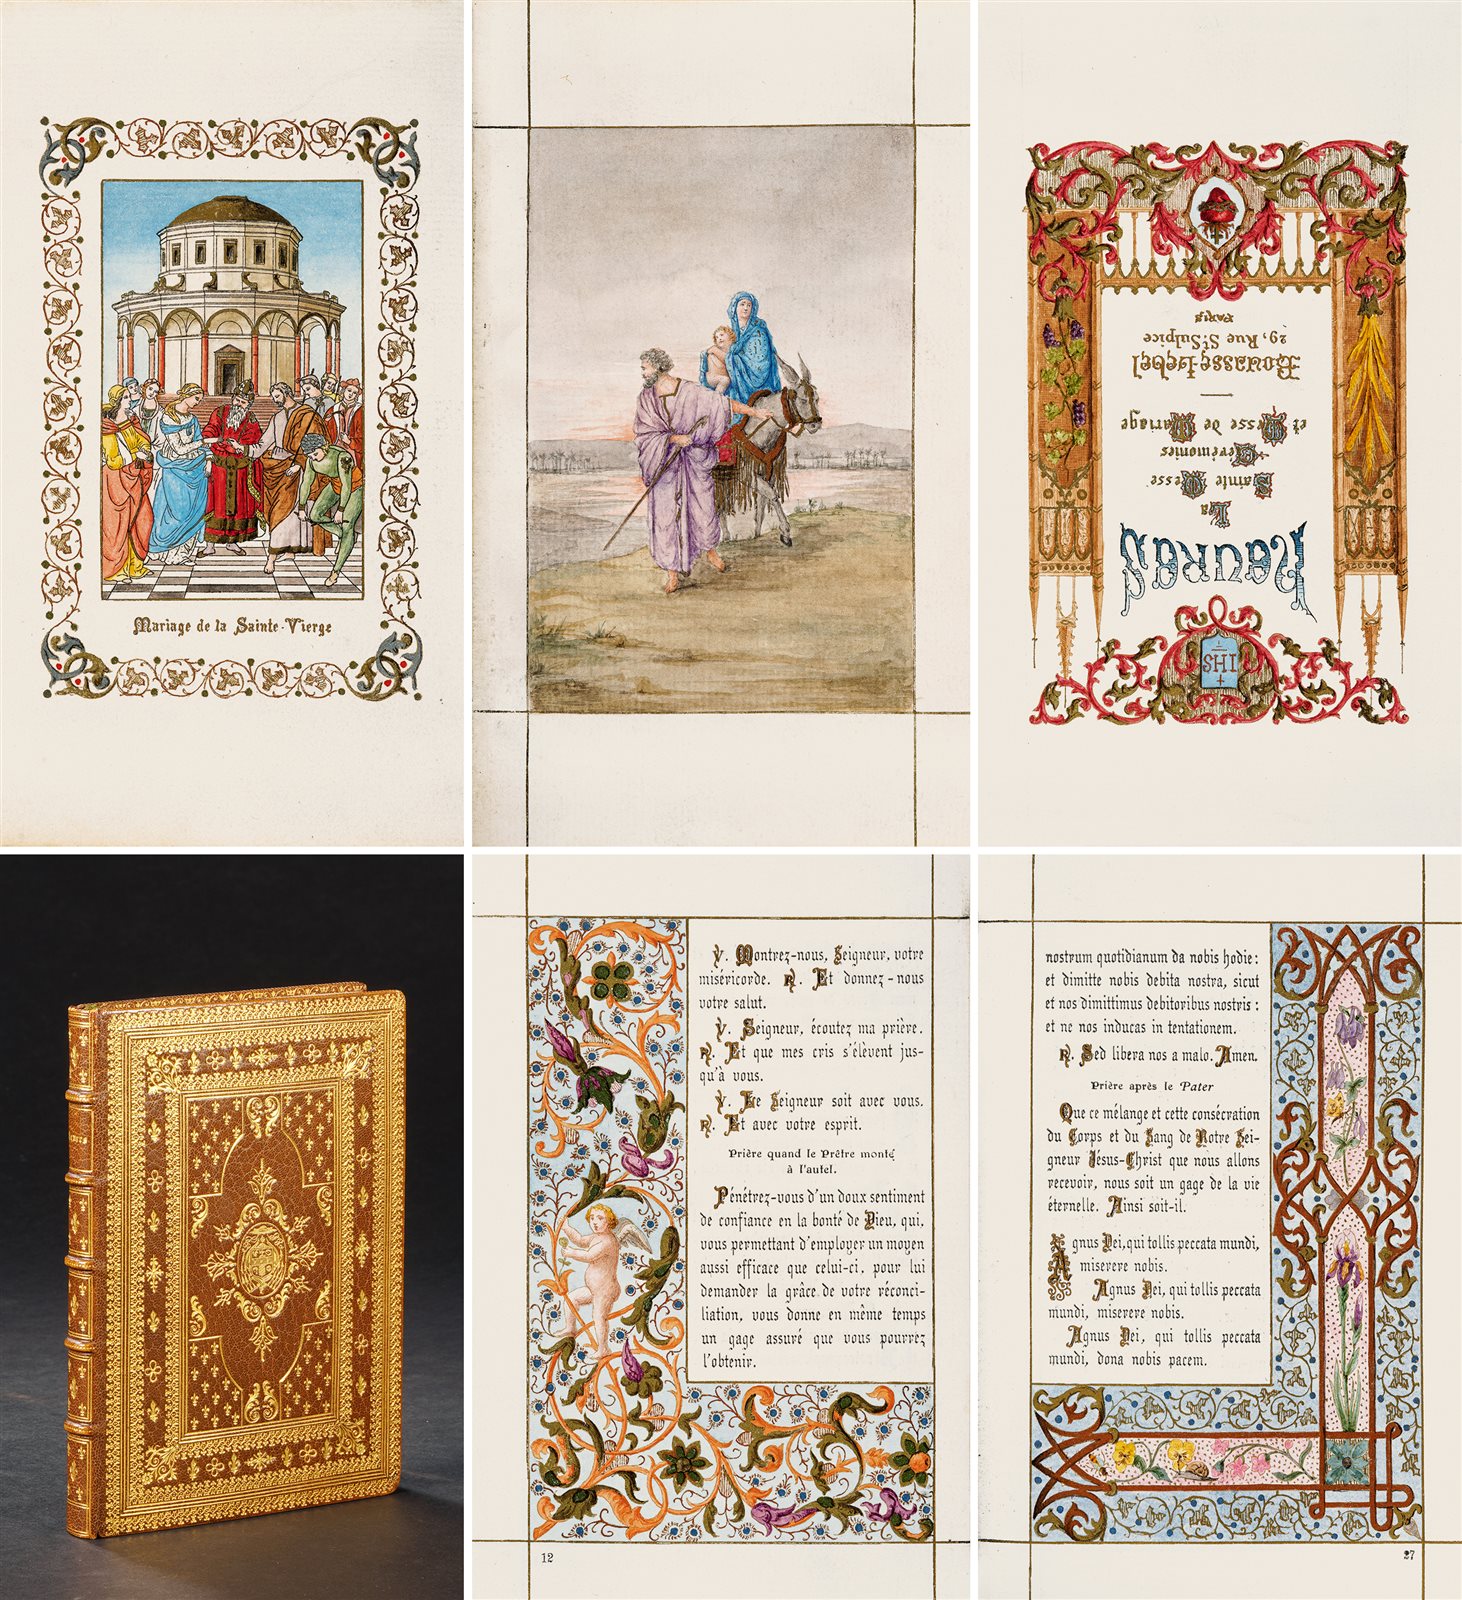 时祷书·婚礼纪念版 1880年巴黎 Bouasse-Lebel 出版